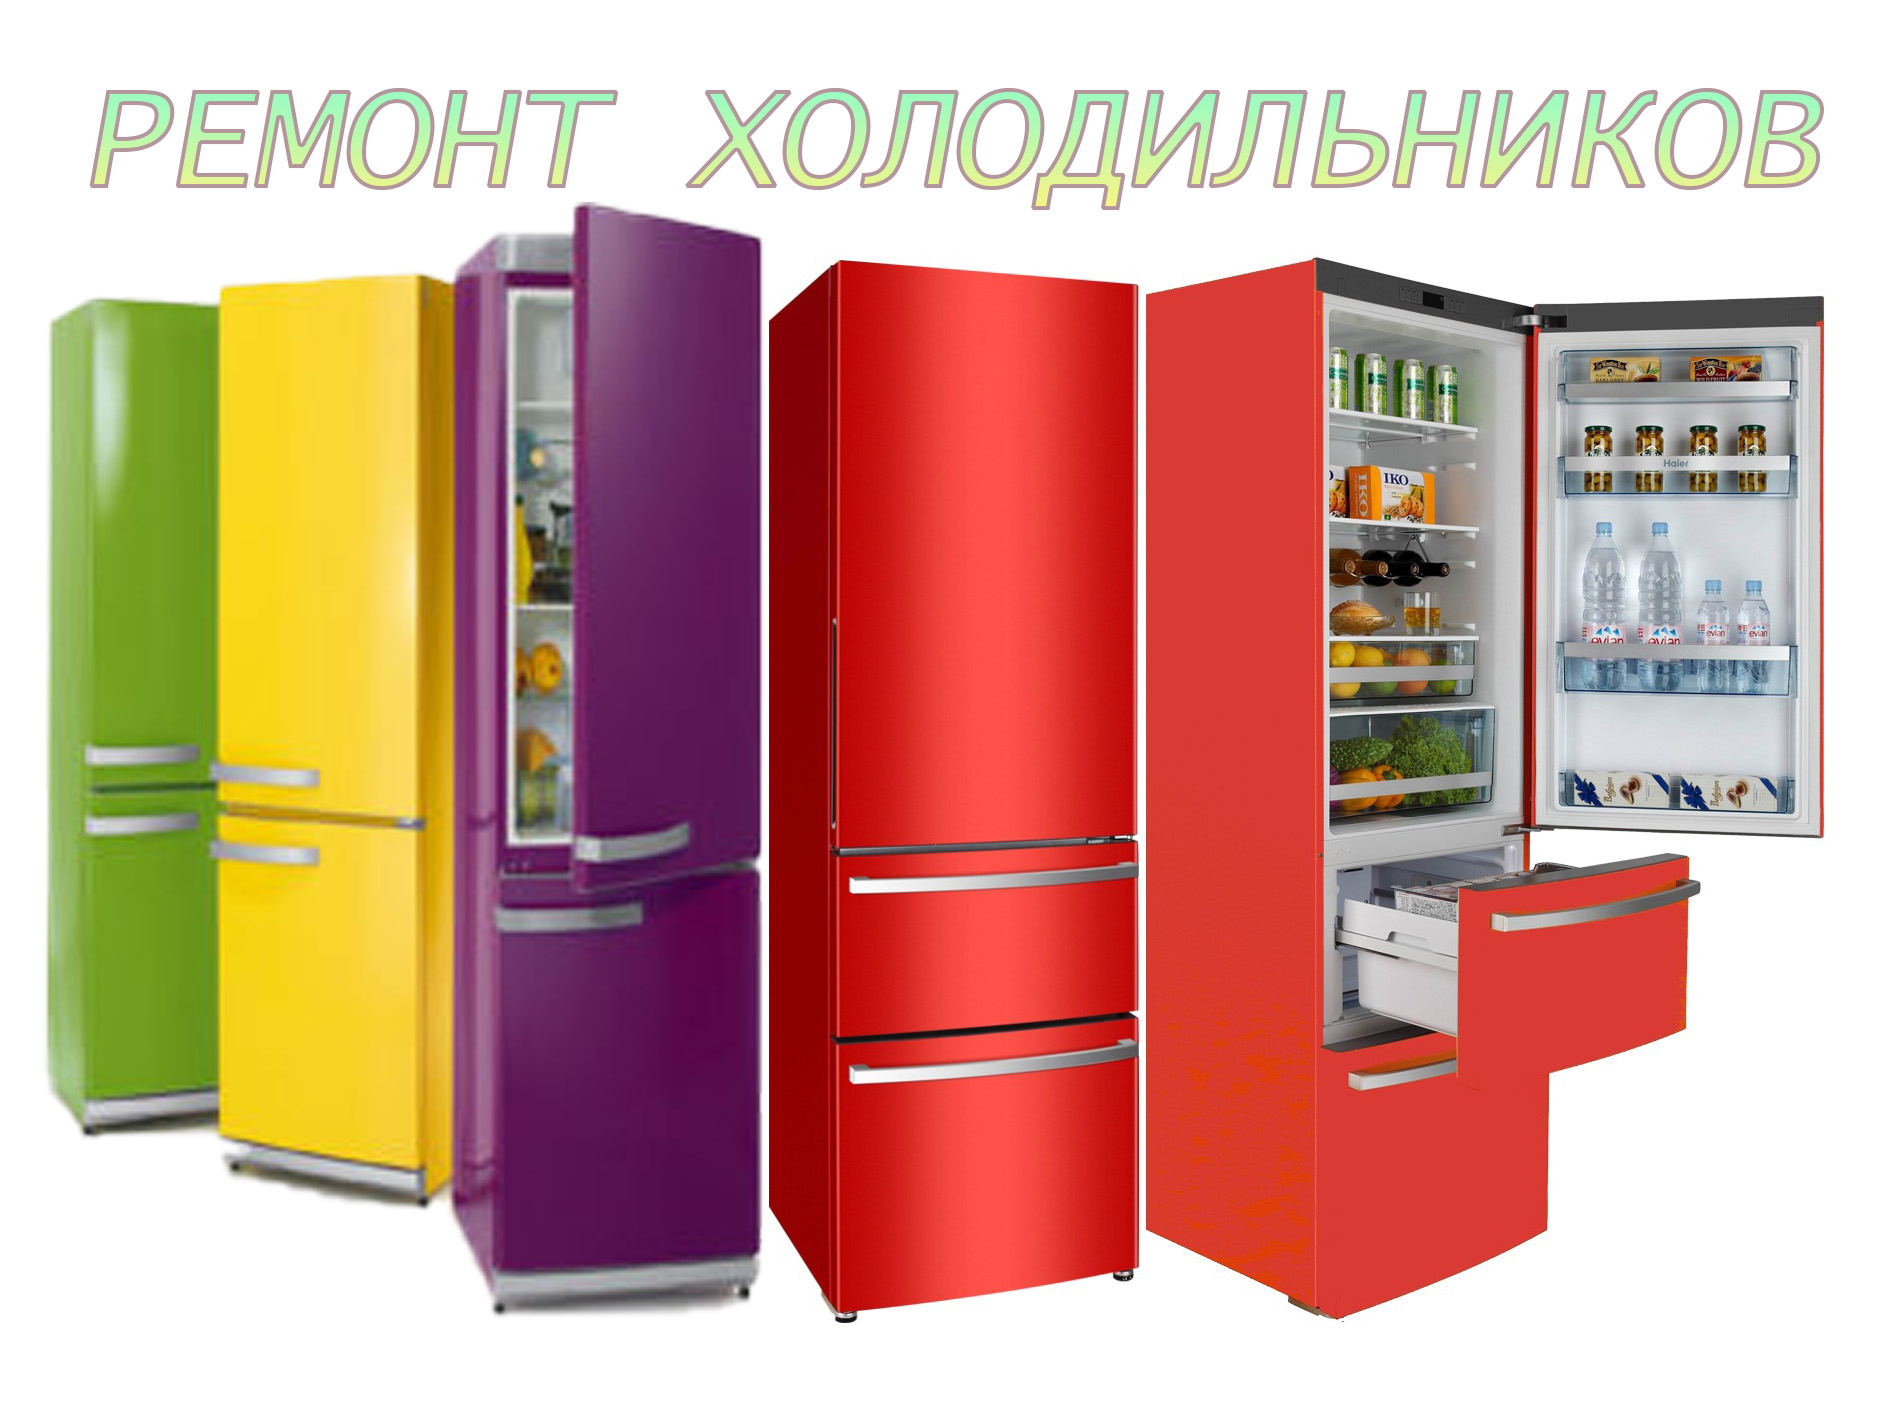 Ремонт холодильников любых марок в городе Гатчина, фото 1, Ленинградская область